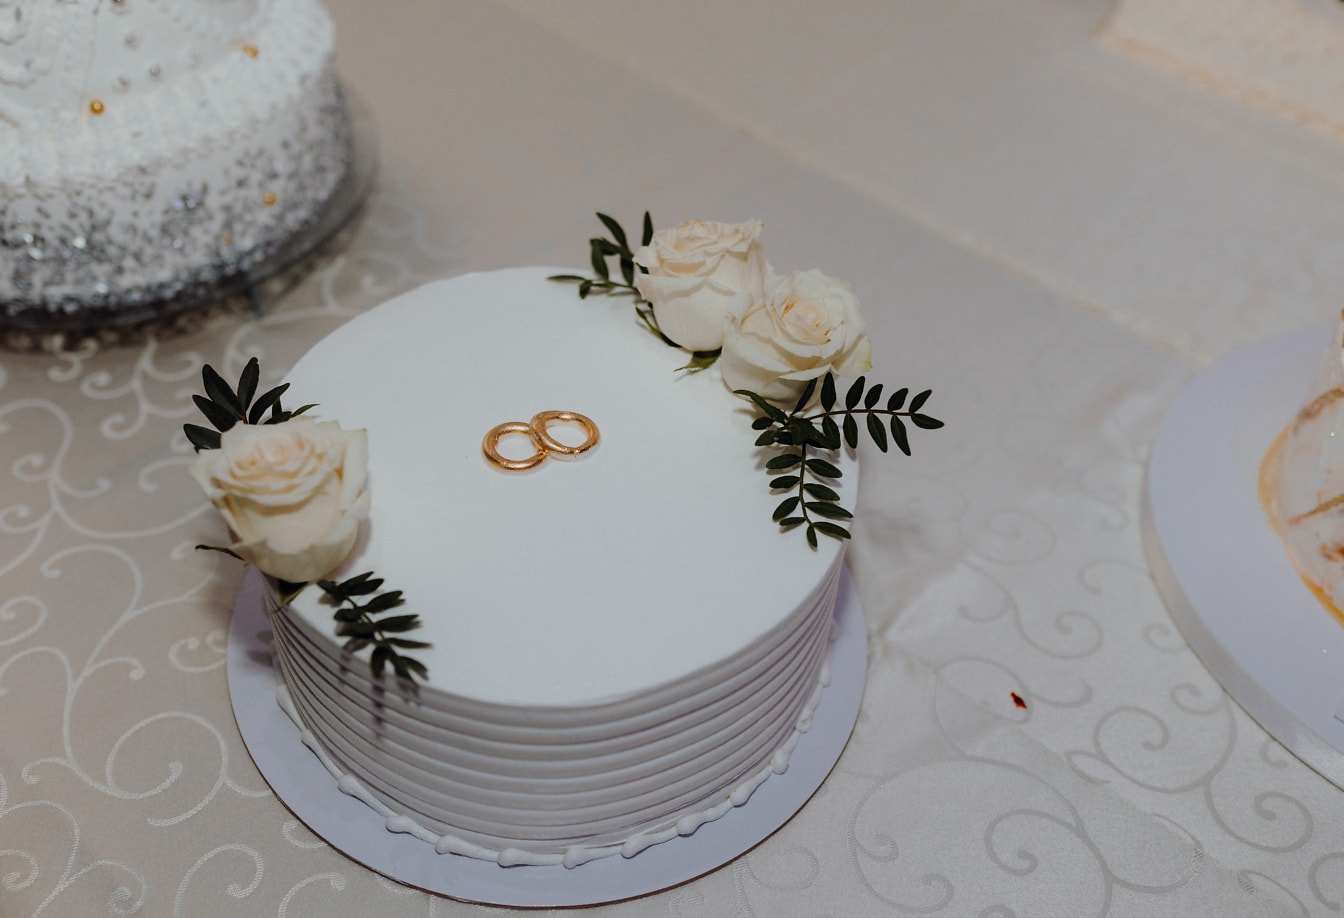 Bílý svatební dort se zlatými snubními prsteny nahoře a bílými růžemi jako dekorace